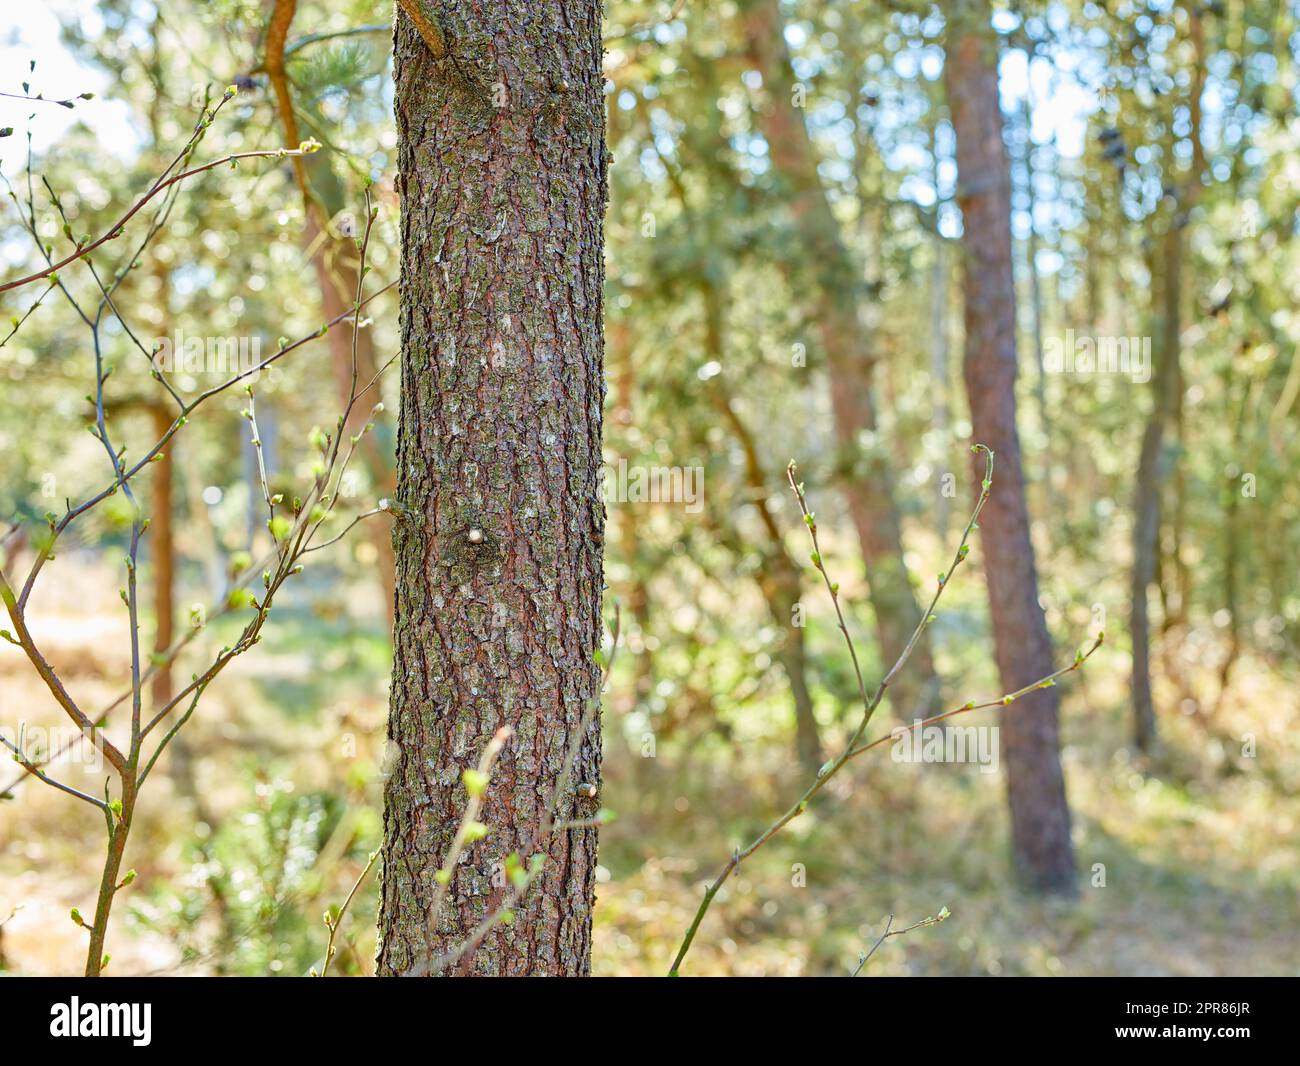 Schöner üppiger grüner Wald in Dänemark, hohe Kiefern wachsen mit der Natur in Harmonie und Fülle. Ruhiger Sommermorgen mit Blick auf ein Zen, ruhiger Dschungel. Beruhigende Natur mit frischer Luft Stockfoto